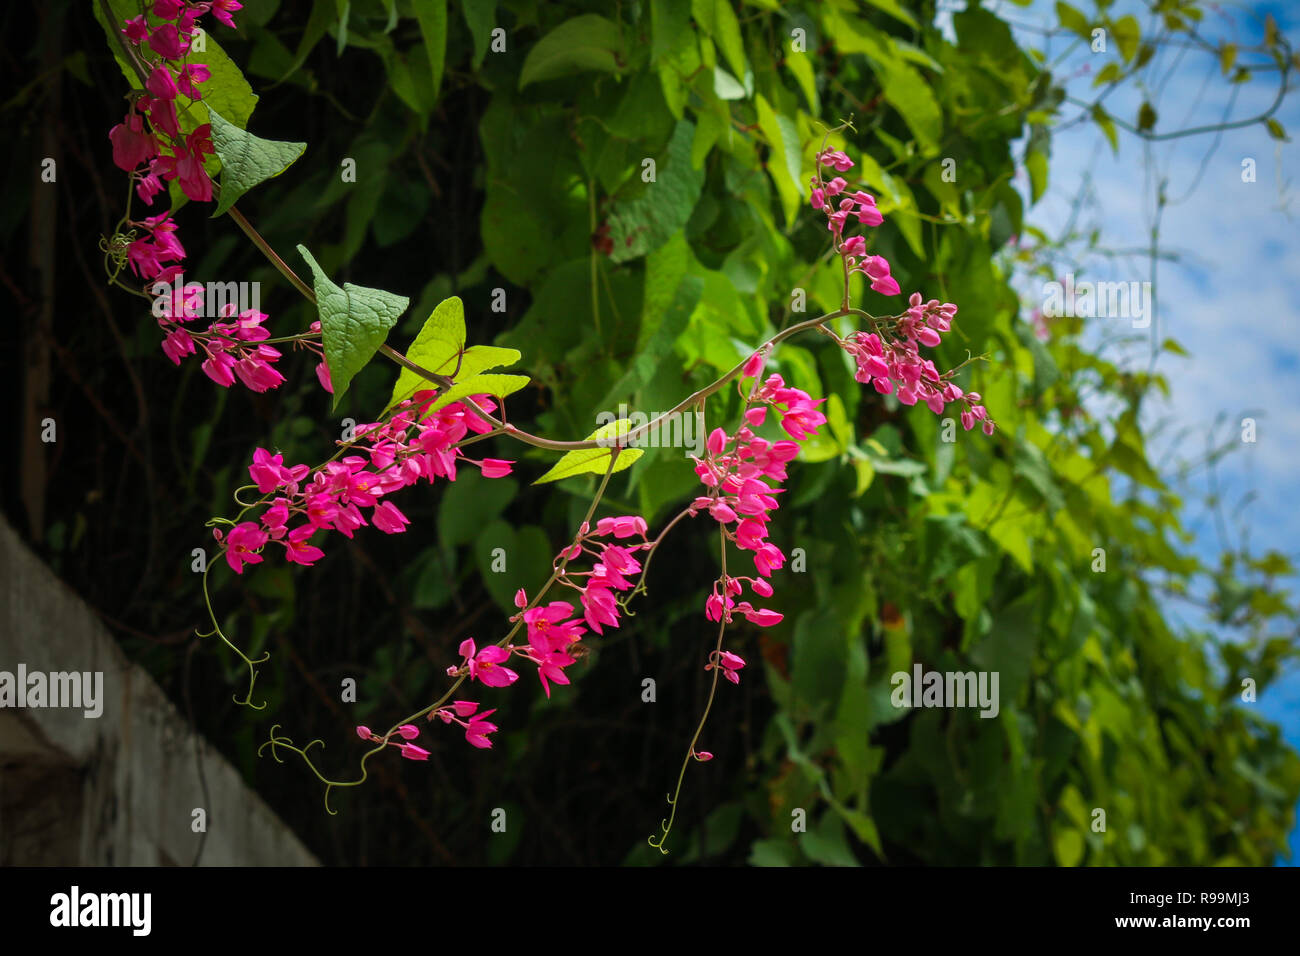 Close up of Antigonon flower in garden Stock Photo